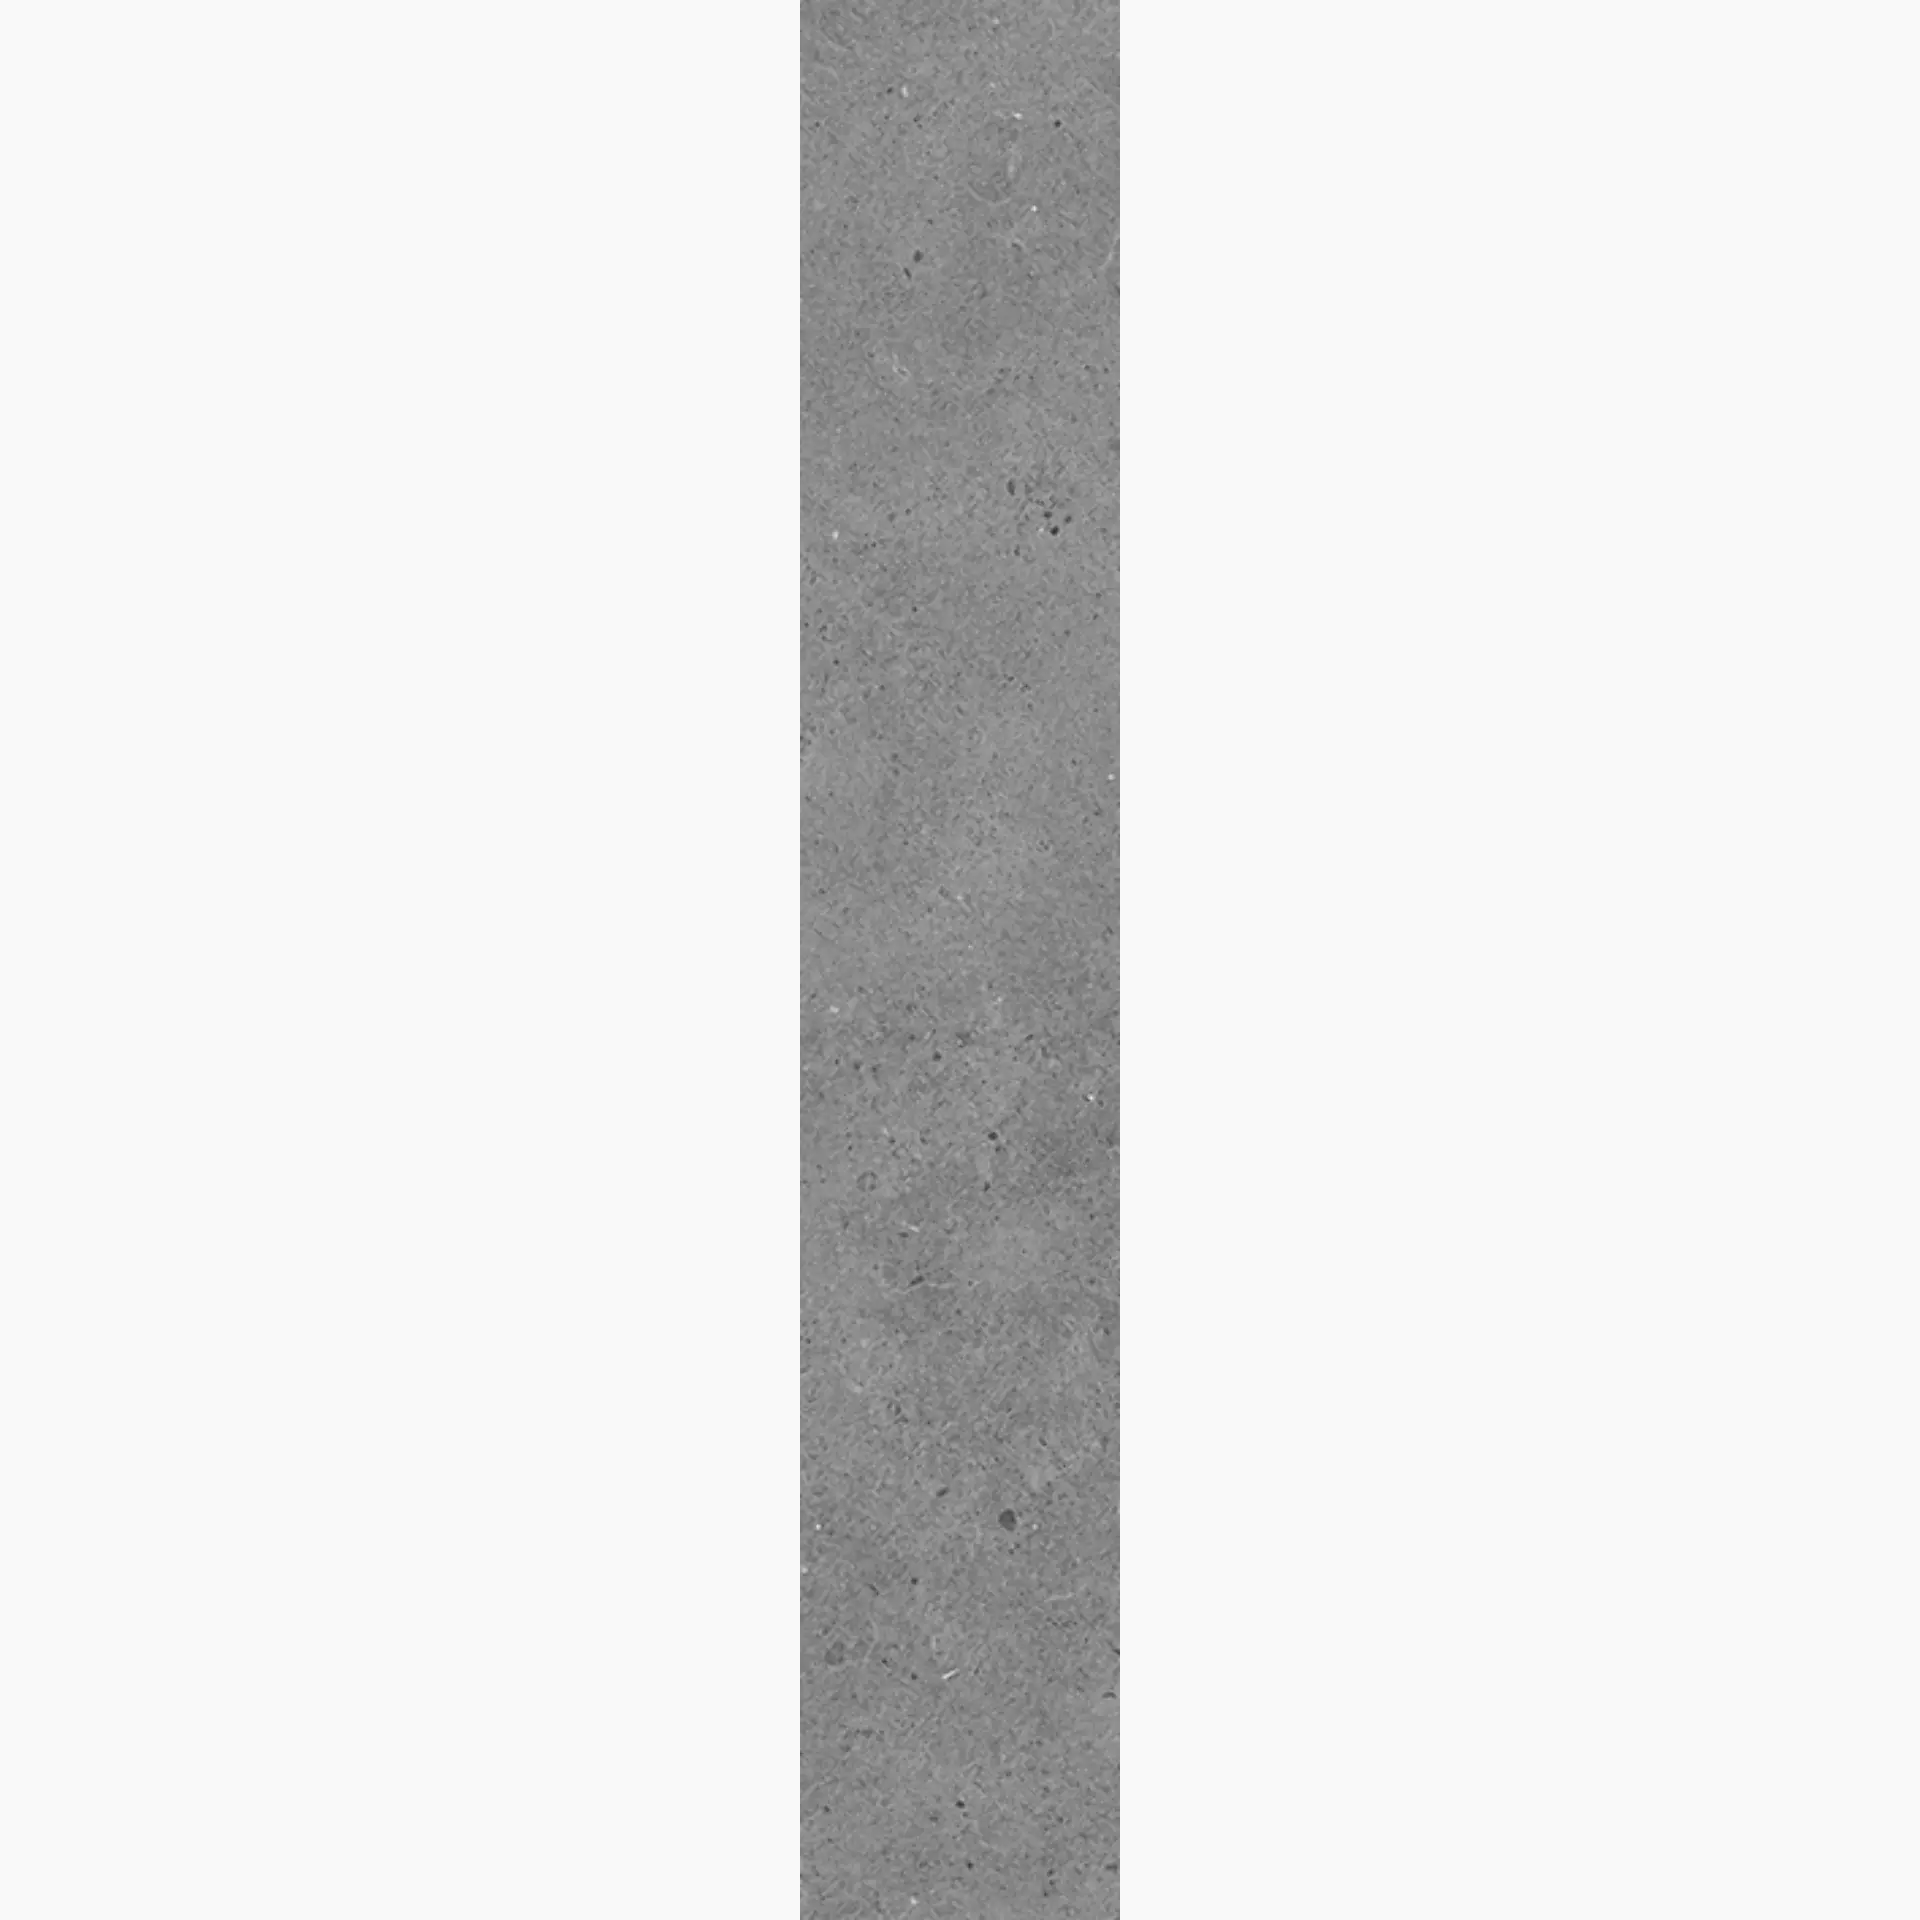 Wandfliese,Bodenfliese Villeroy & Boch Solid Tones Pure Concrete Matt Pure Concrete 2417-PC61 matt 10x60cm rektifiziert 10mm